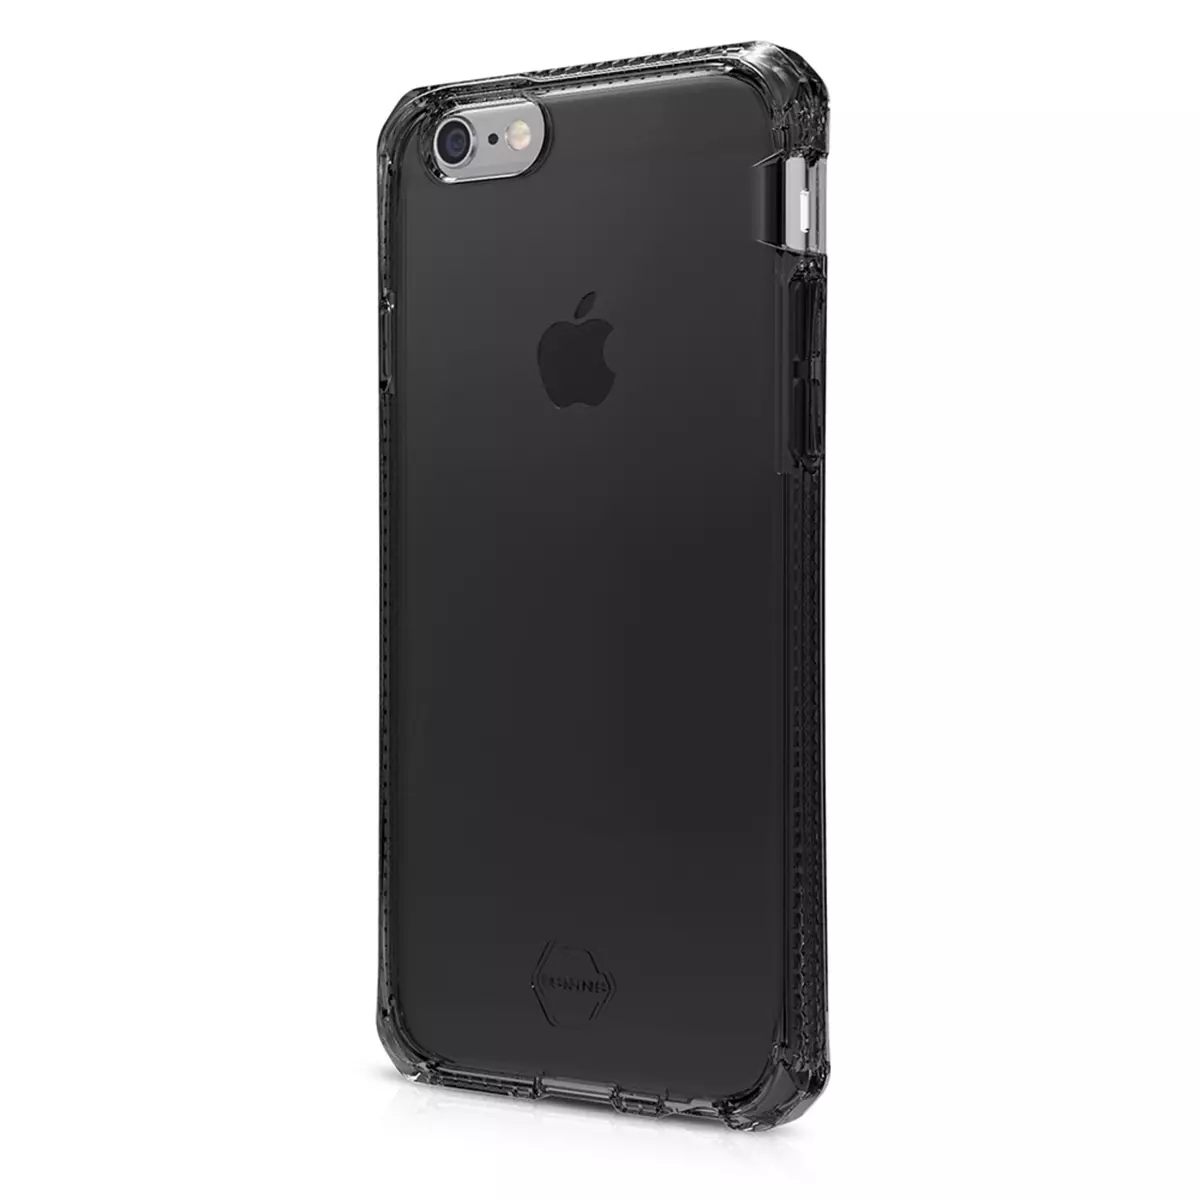 ITSKINS Coque pour iPhone 6/6S - Noire